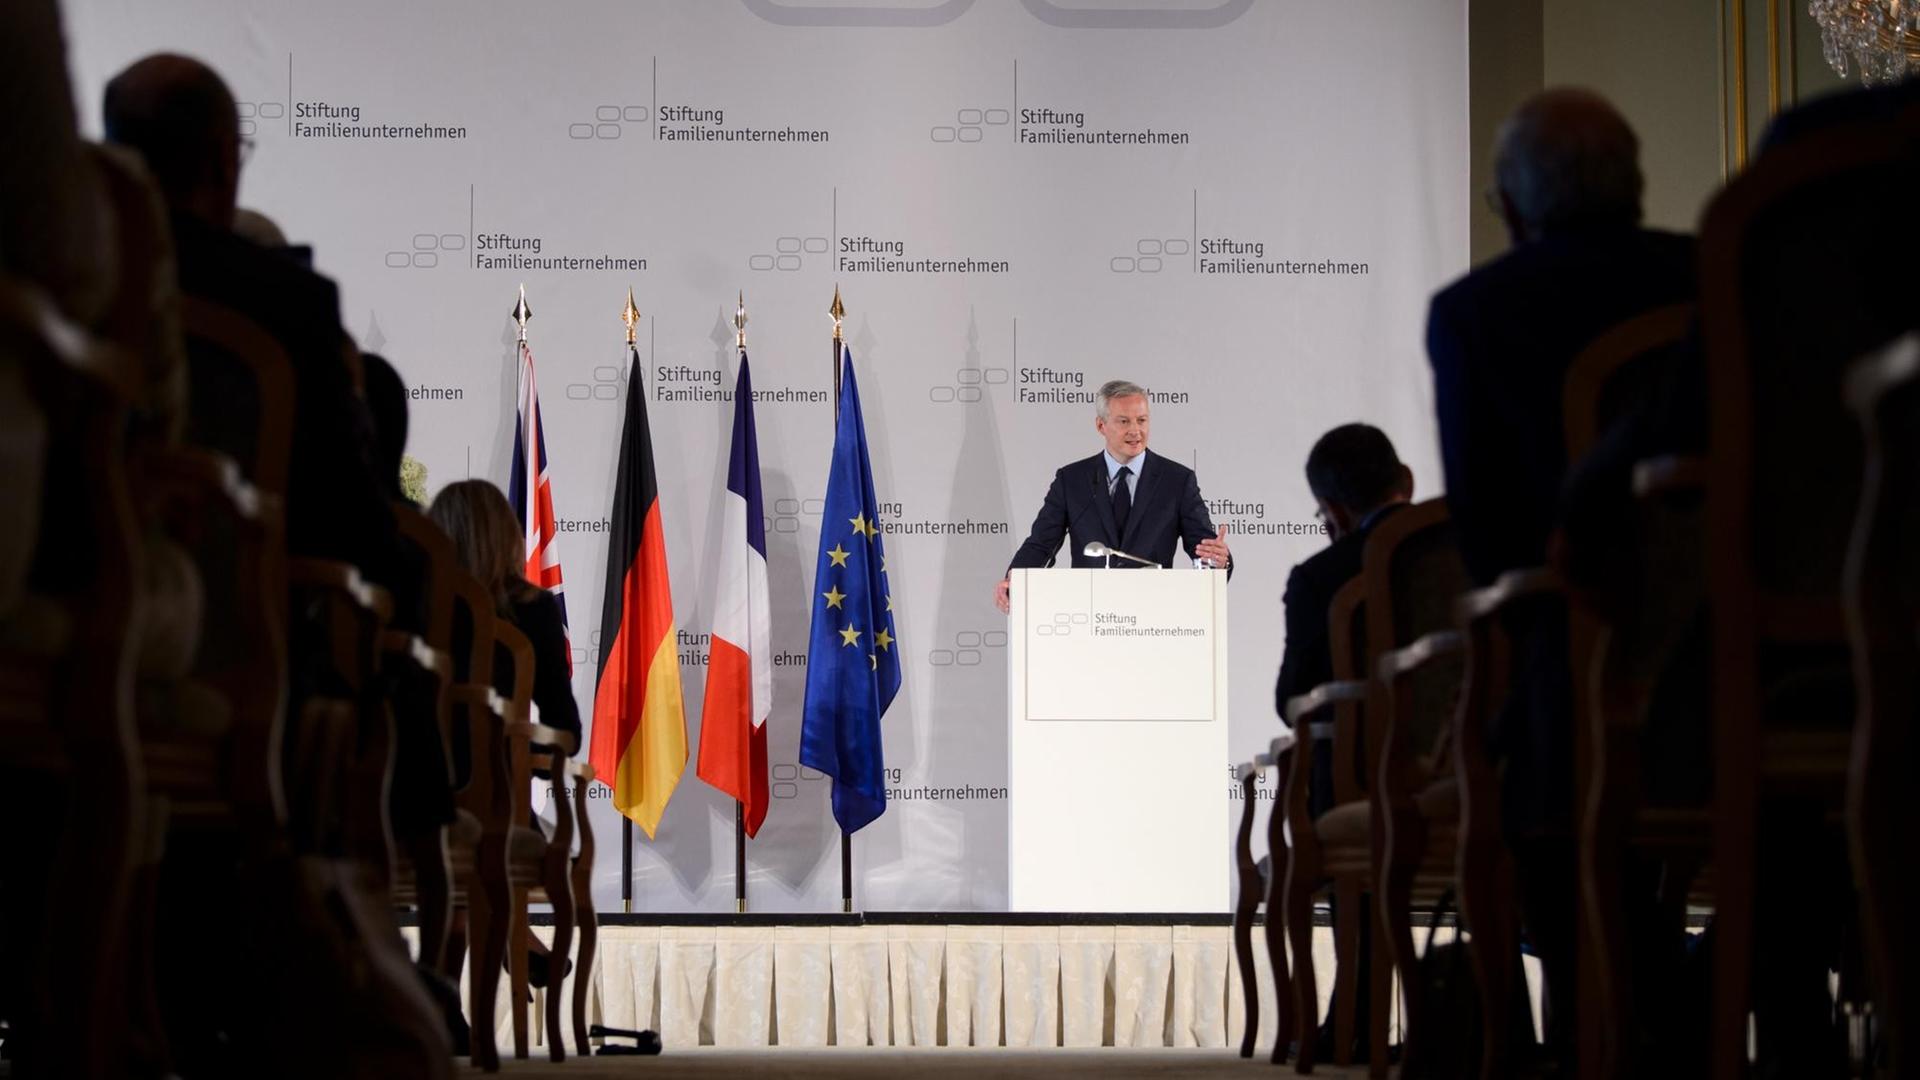 Das Bild zeigt aus größerer Entfernung Bruno Le Maire, Finanzminister von Frankreich. Er spricht beim Tag des deutschen Familienunternehmens der Stiftung für Familienunternehmen. Er steht an einem Rednerpult und hält sich daran mit beiden Händen fest.